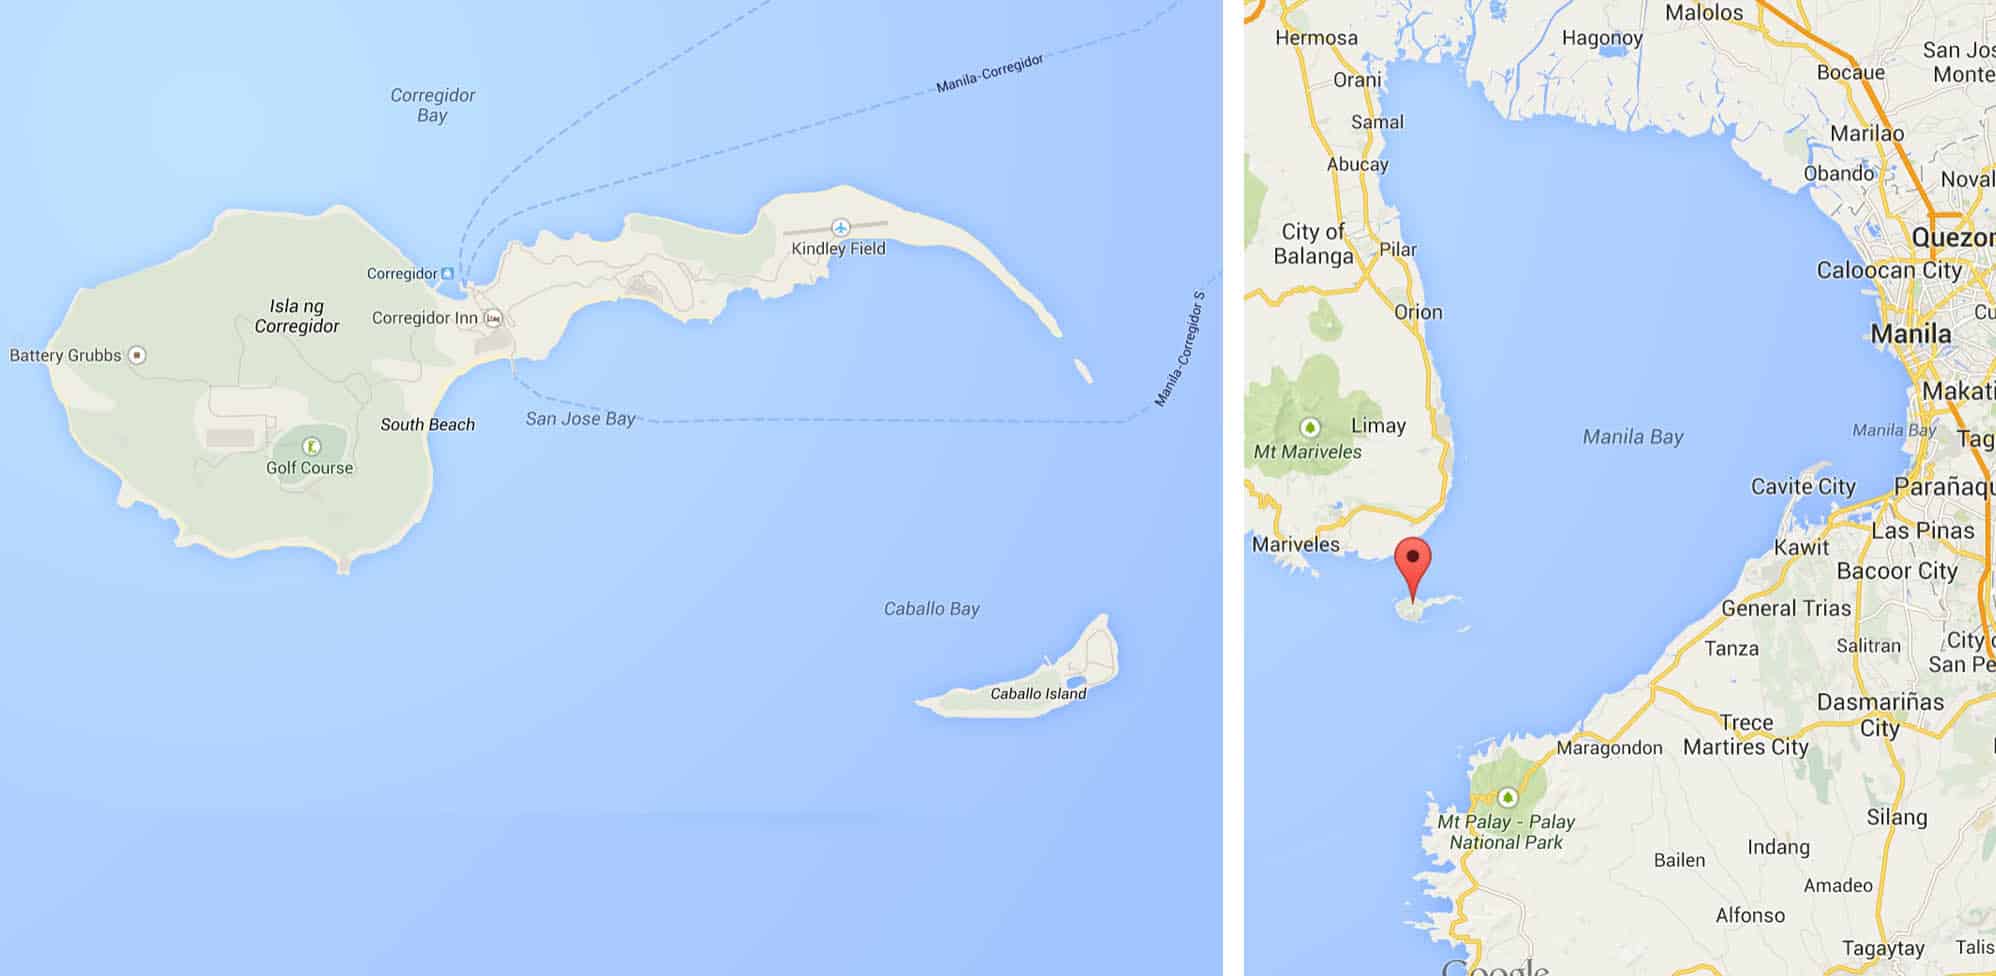 Corregidor Island及其在马尼拉湾的地位。好吧，我说。它看起来像一个精子细胞。